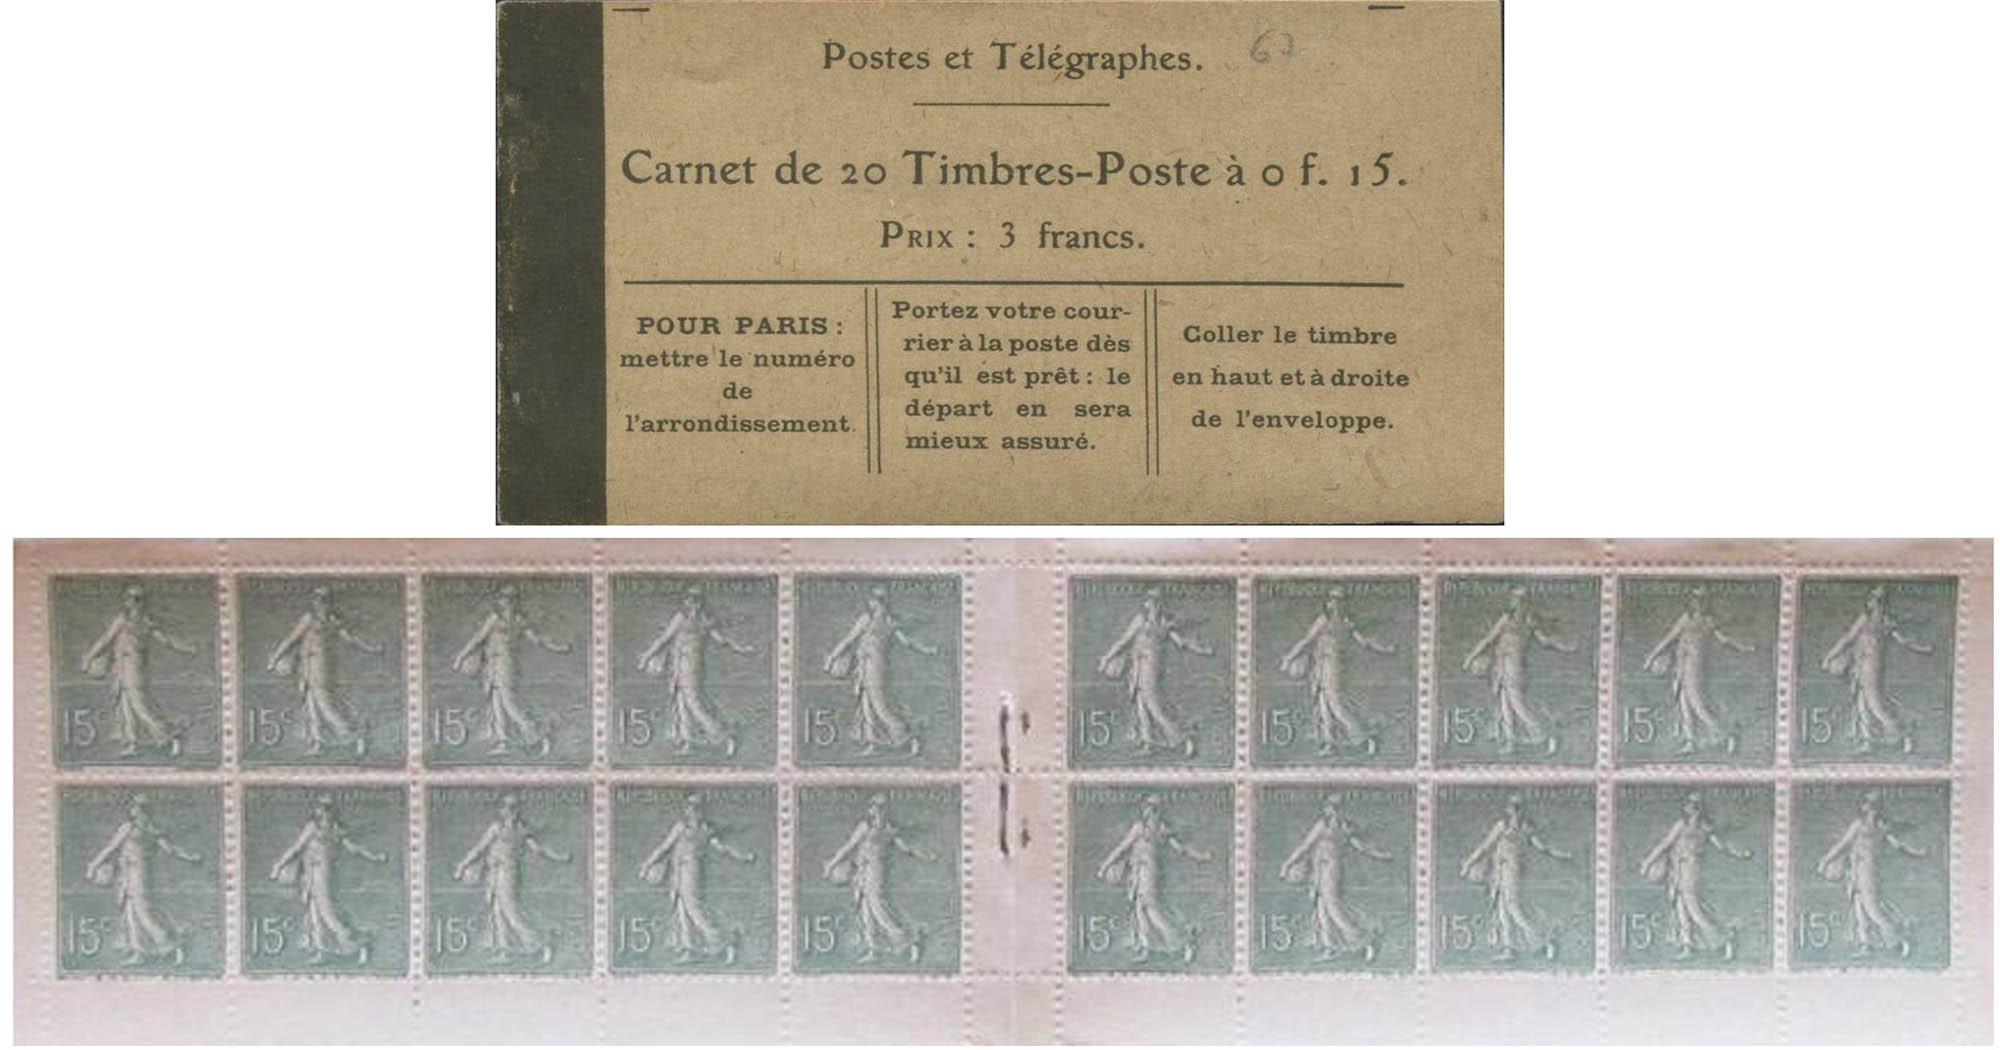 Postes et télégraphes Carnet de 20 Timbres-Poste